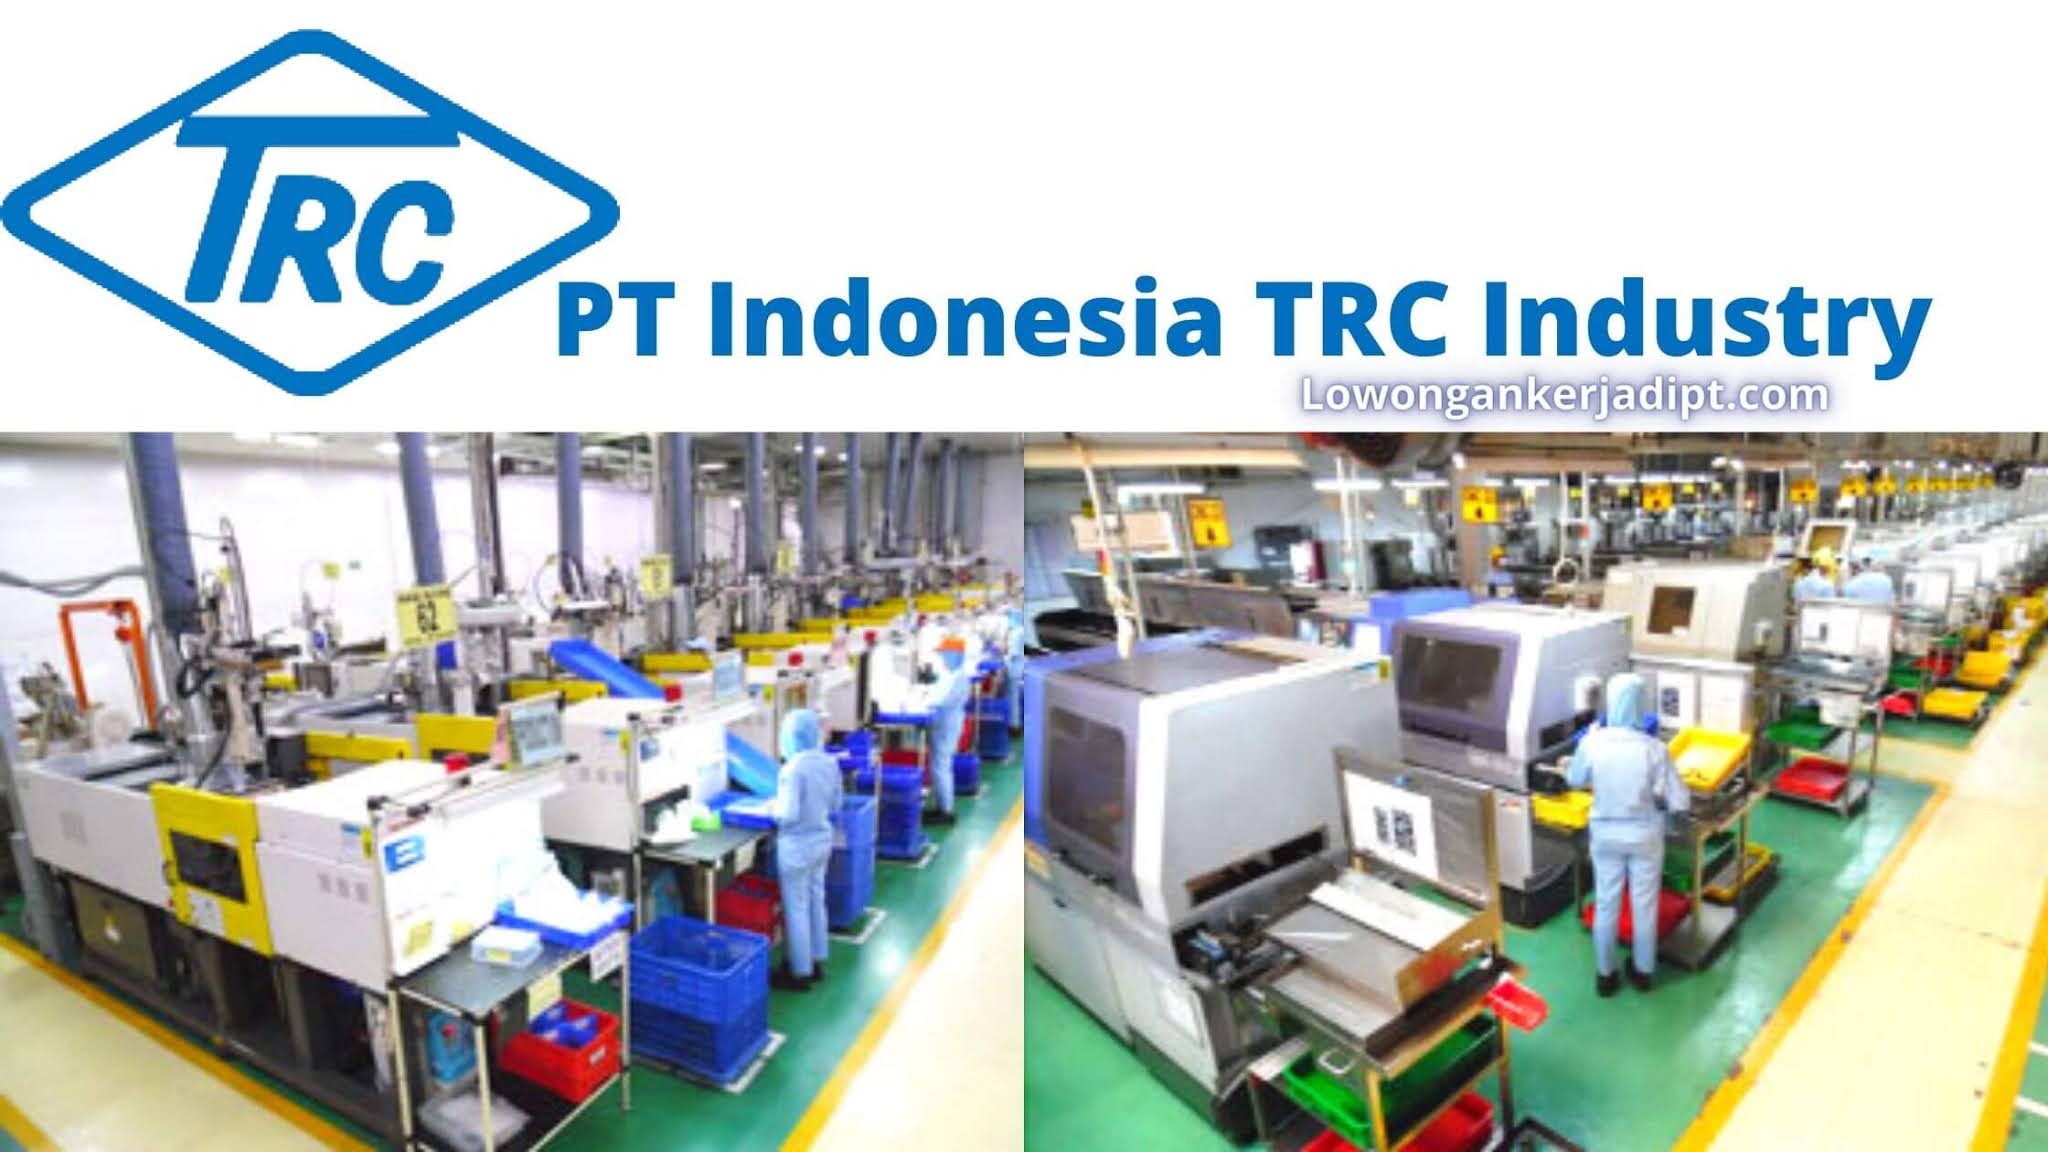 PT Indonesia TRC Industry